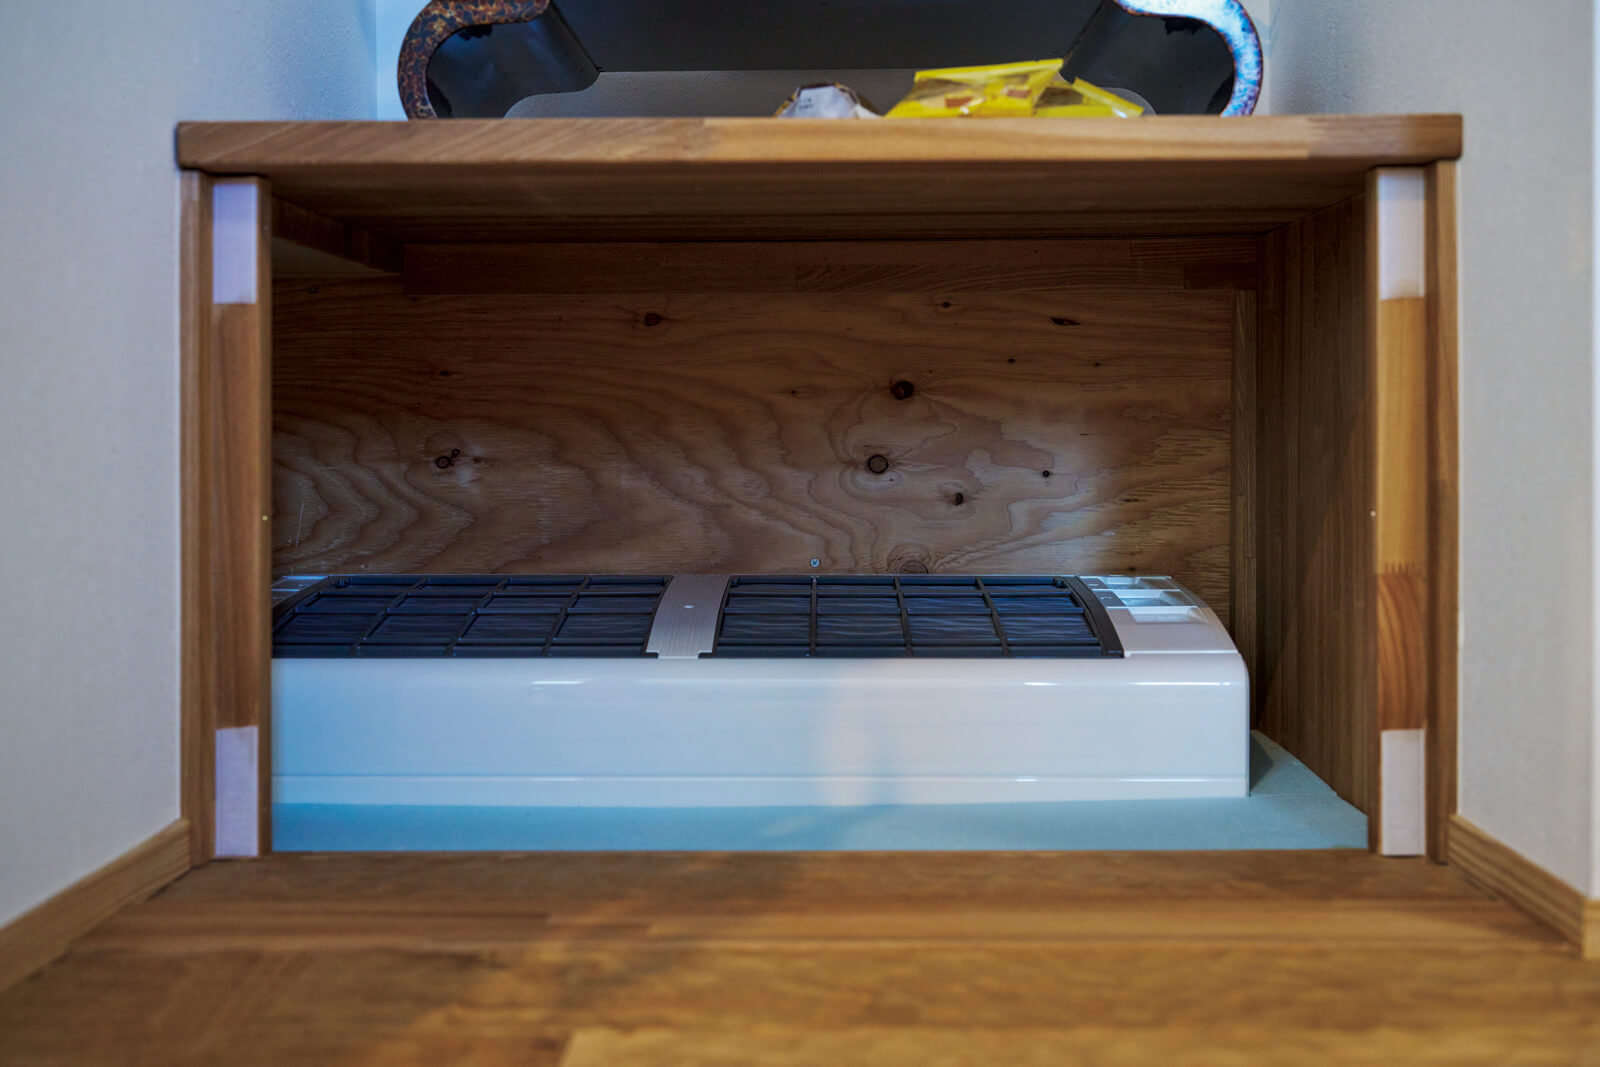 床下暖房のエアコンは、和室の物置の下に設置し、木製パネルで目隠しできるようになっている。この12畳用エアコン1台で家中を暖められる